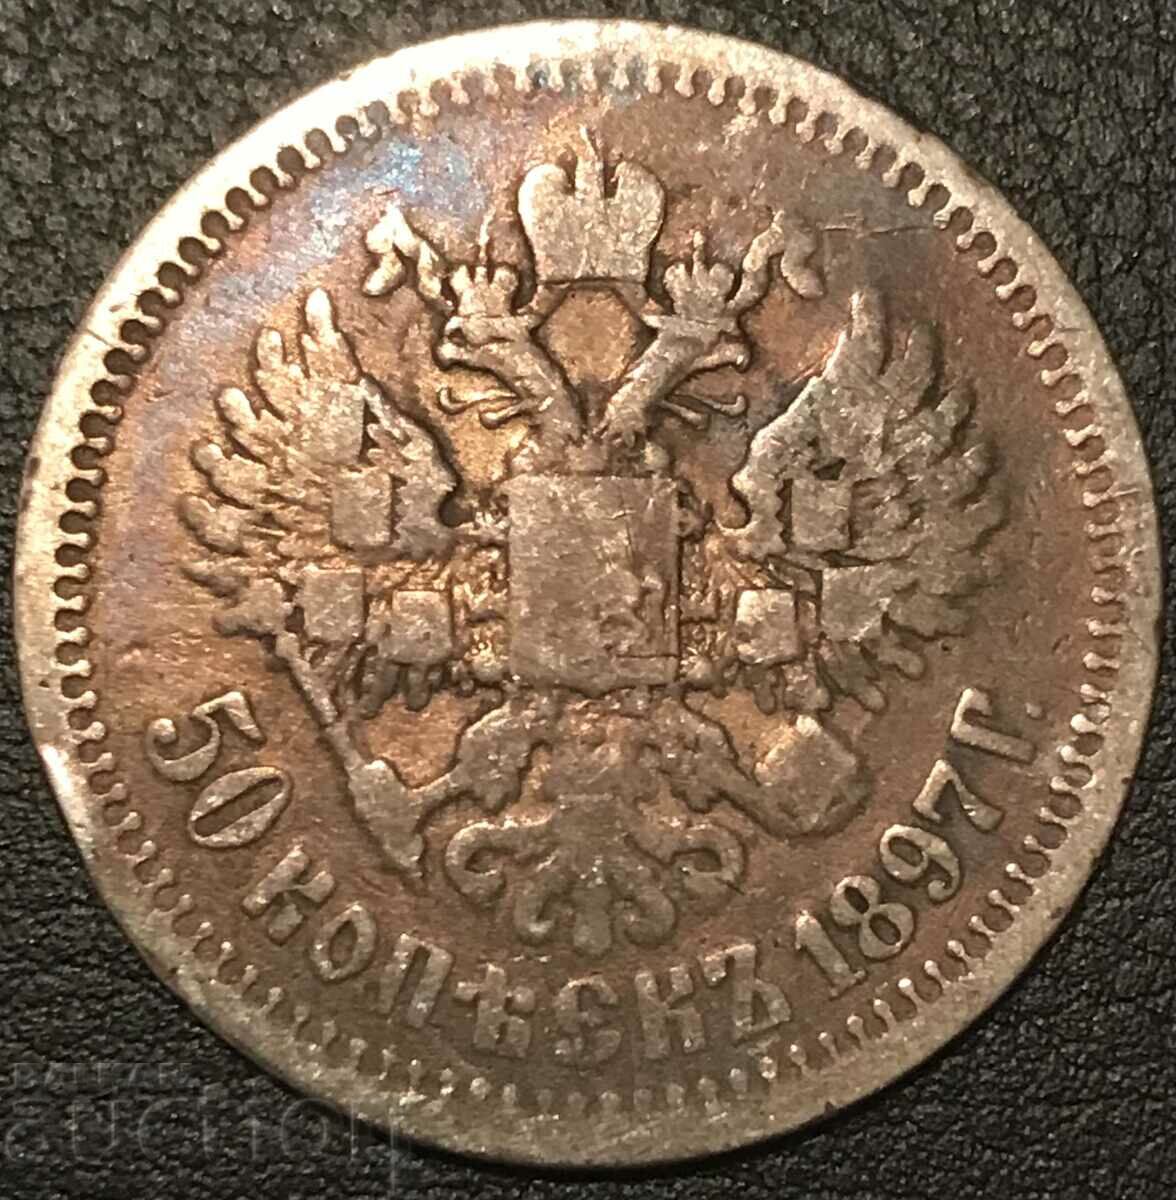 Russia 50 kopecks half 1897 Nicholas ll silver